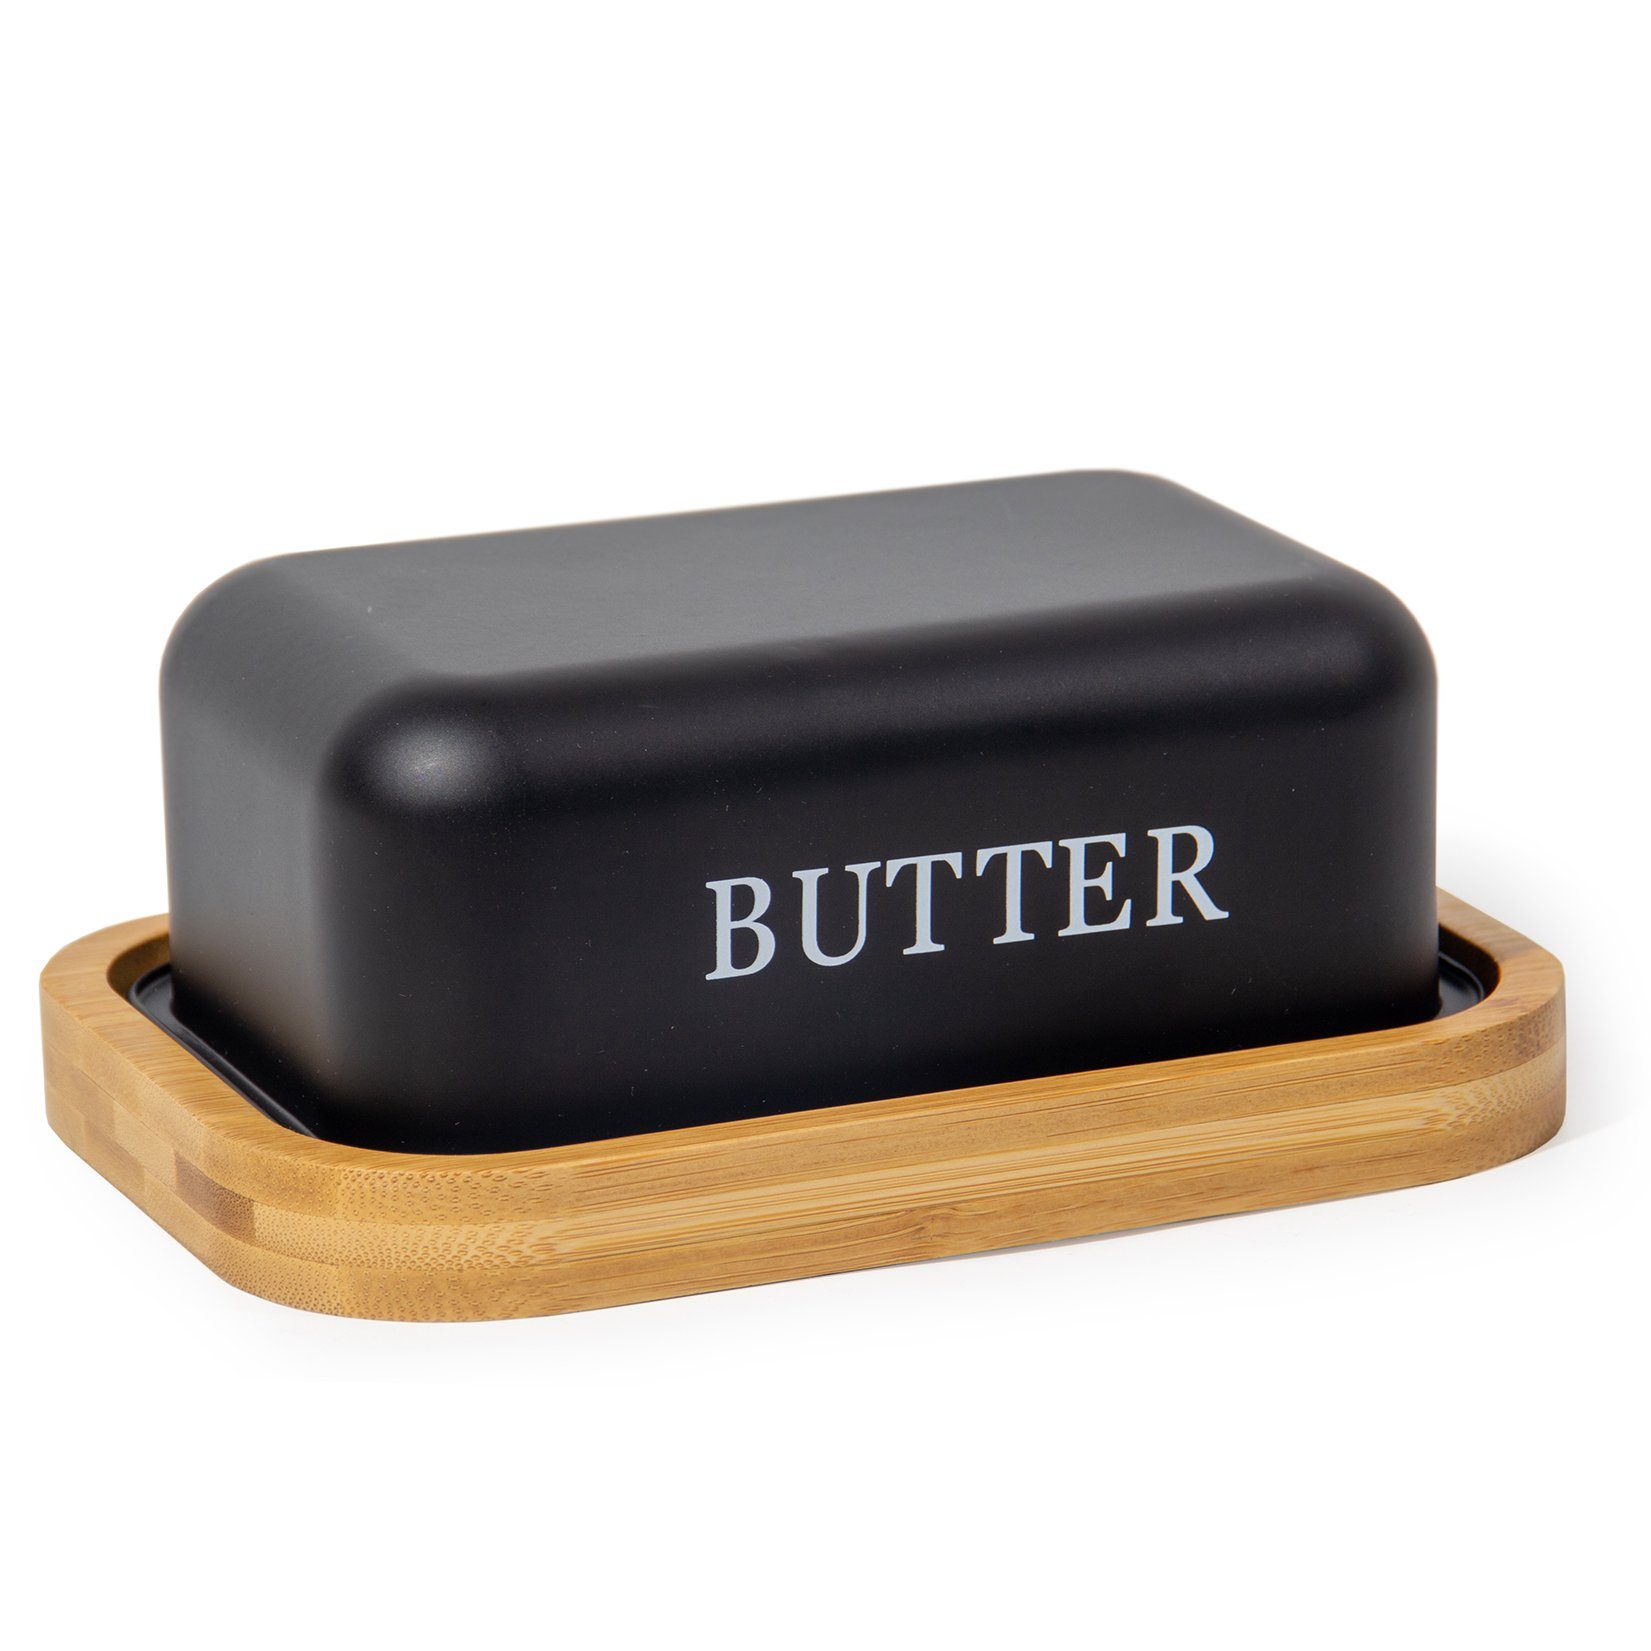 Zedelmaier Butterdose Butterdose,Butterglocke für 250g Butter,mit nachhaltigem holzdeckel, (Packung, 1 x Becher, 1 x Deckel, HYH004) Schwarz+hölzerne Abdeckung